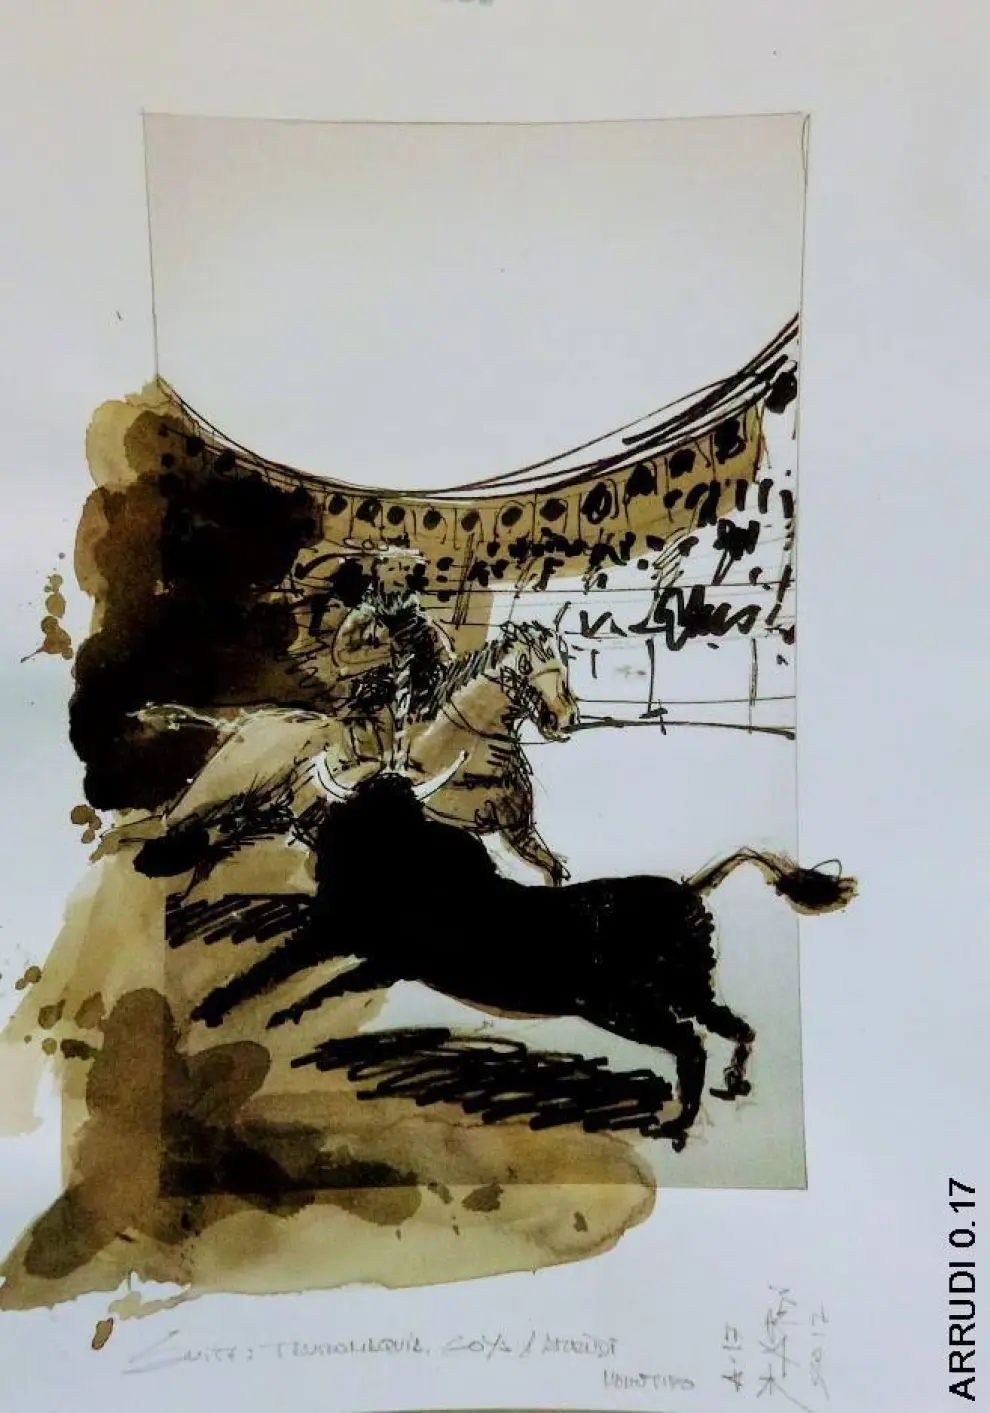 Pinturas de Miguel Ángel Arrudi inspiradas en las tauromaquias de Goya